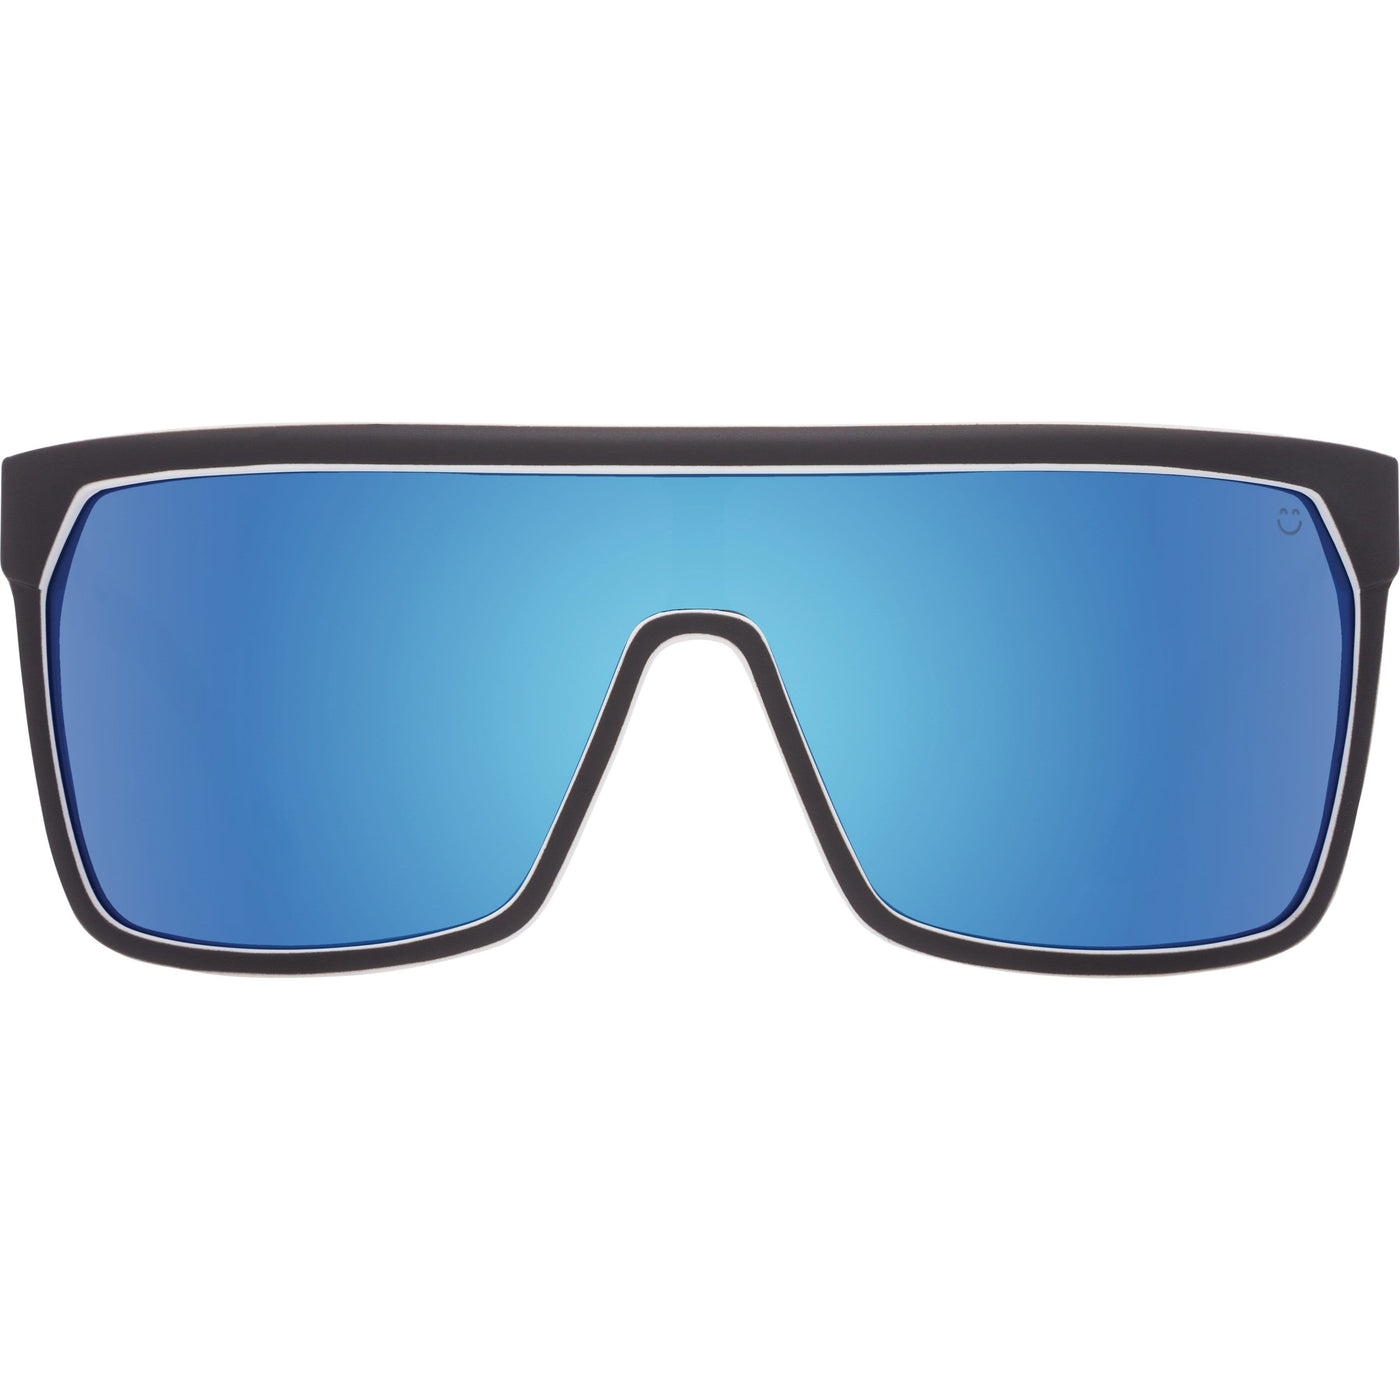 spy optic flynn oversized sunglasses - light blue